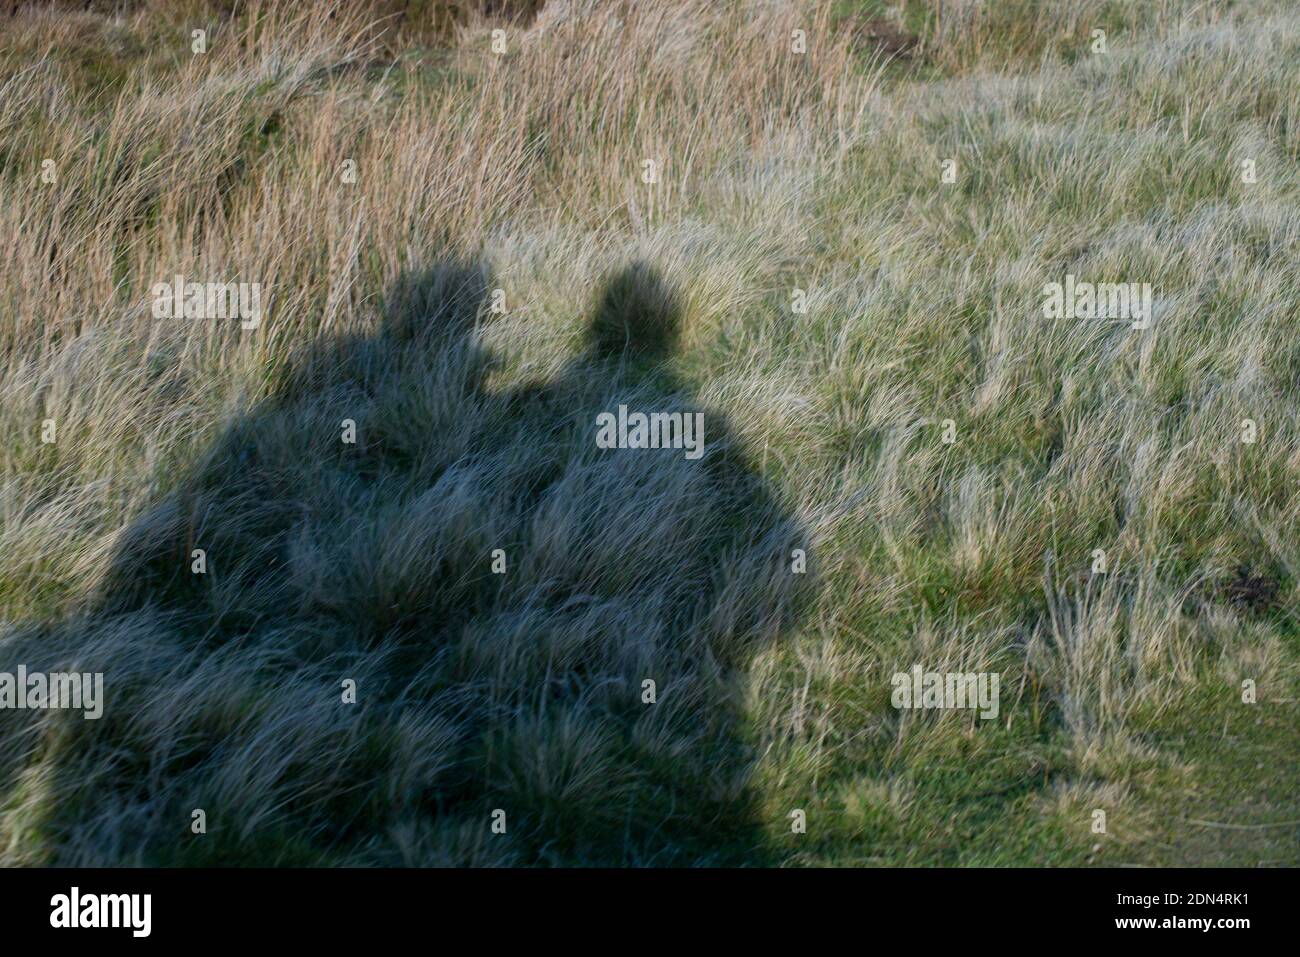 Ein einfaches Bild der Schatten zweier stehender Personen Schließen Sie sich auf offenem Grasland zusammen Stockfoto